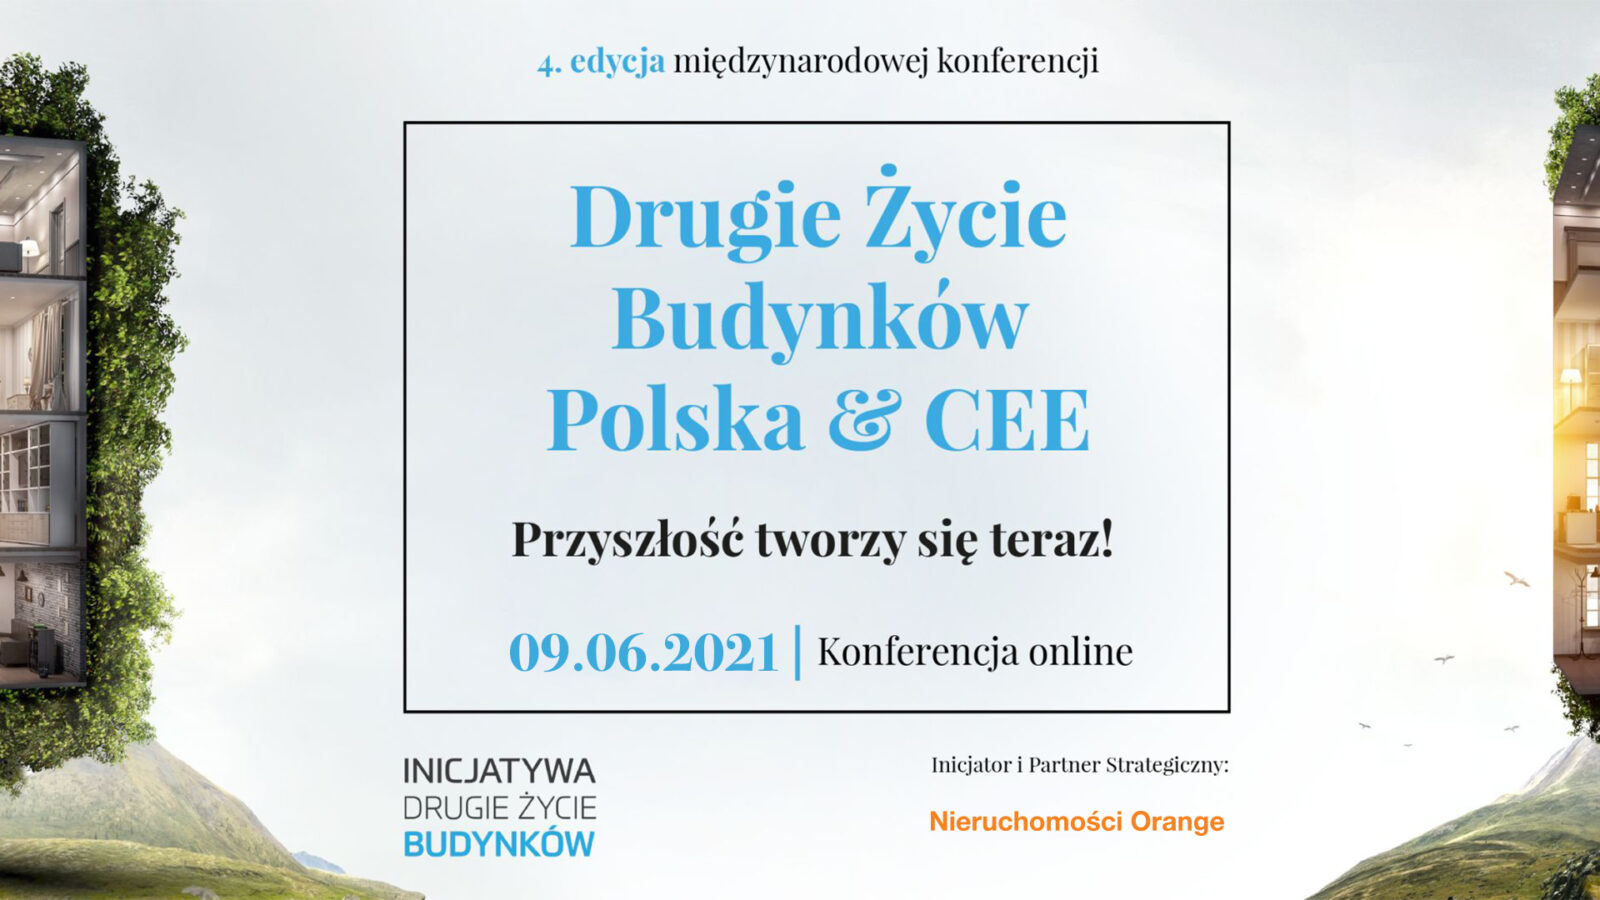 4. edycja konferencji „Drugie Życie Budynków. Polska & CEE” za nami!